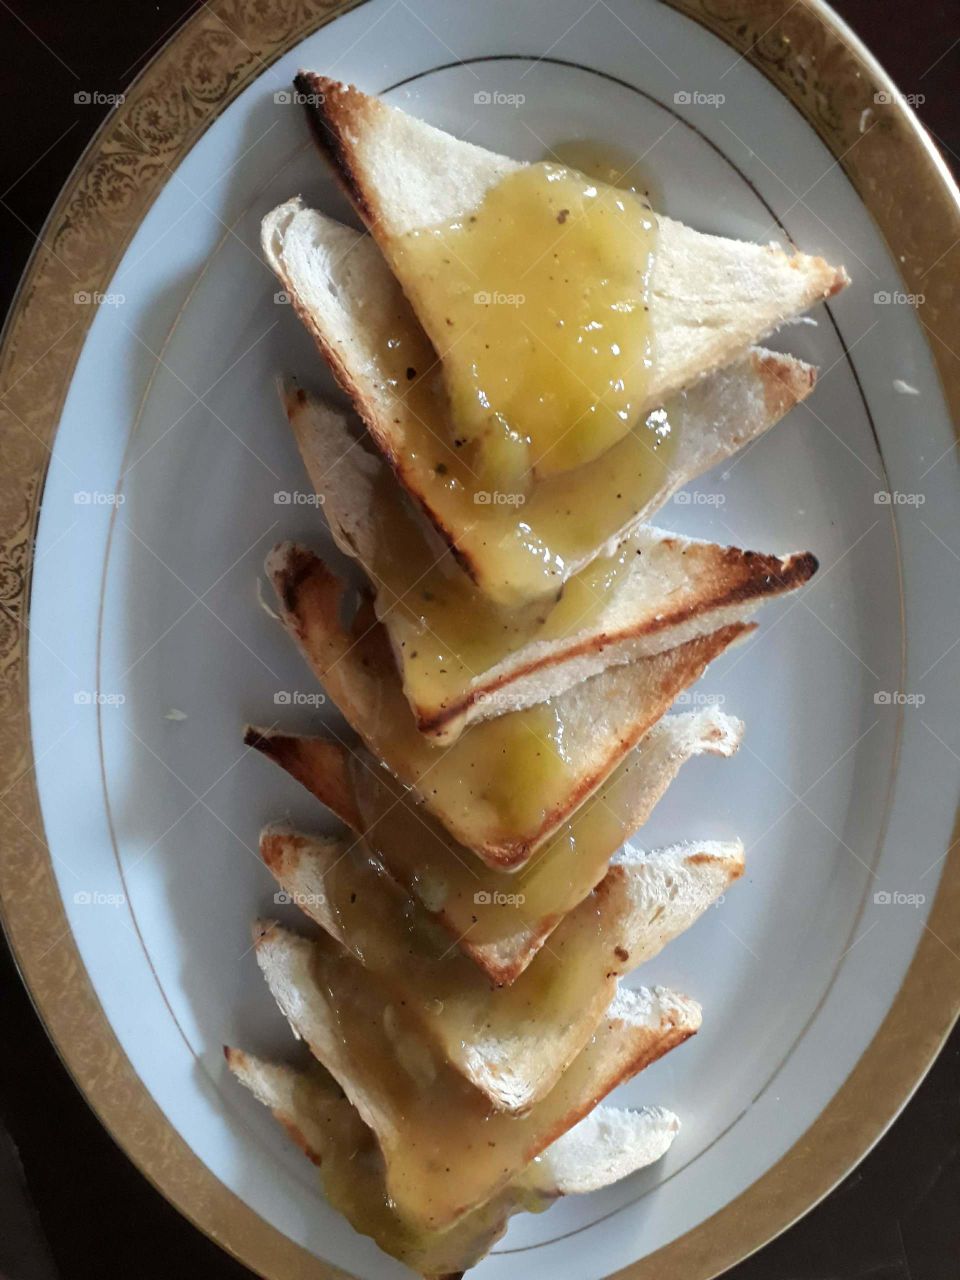 Pan tostados acompañado de jalea de mango.